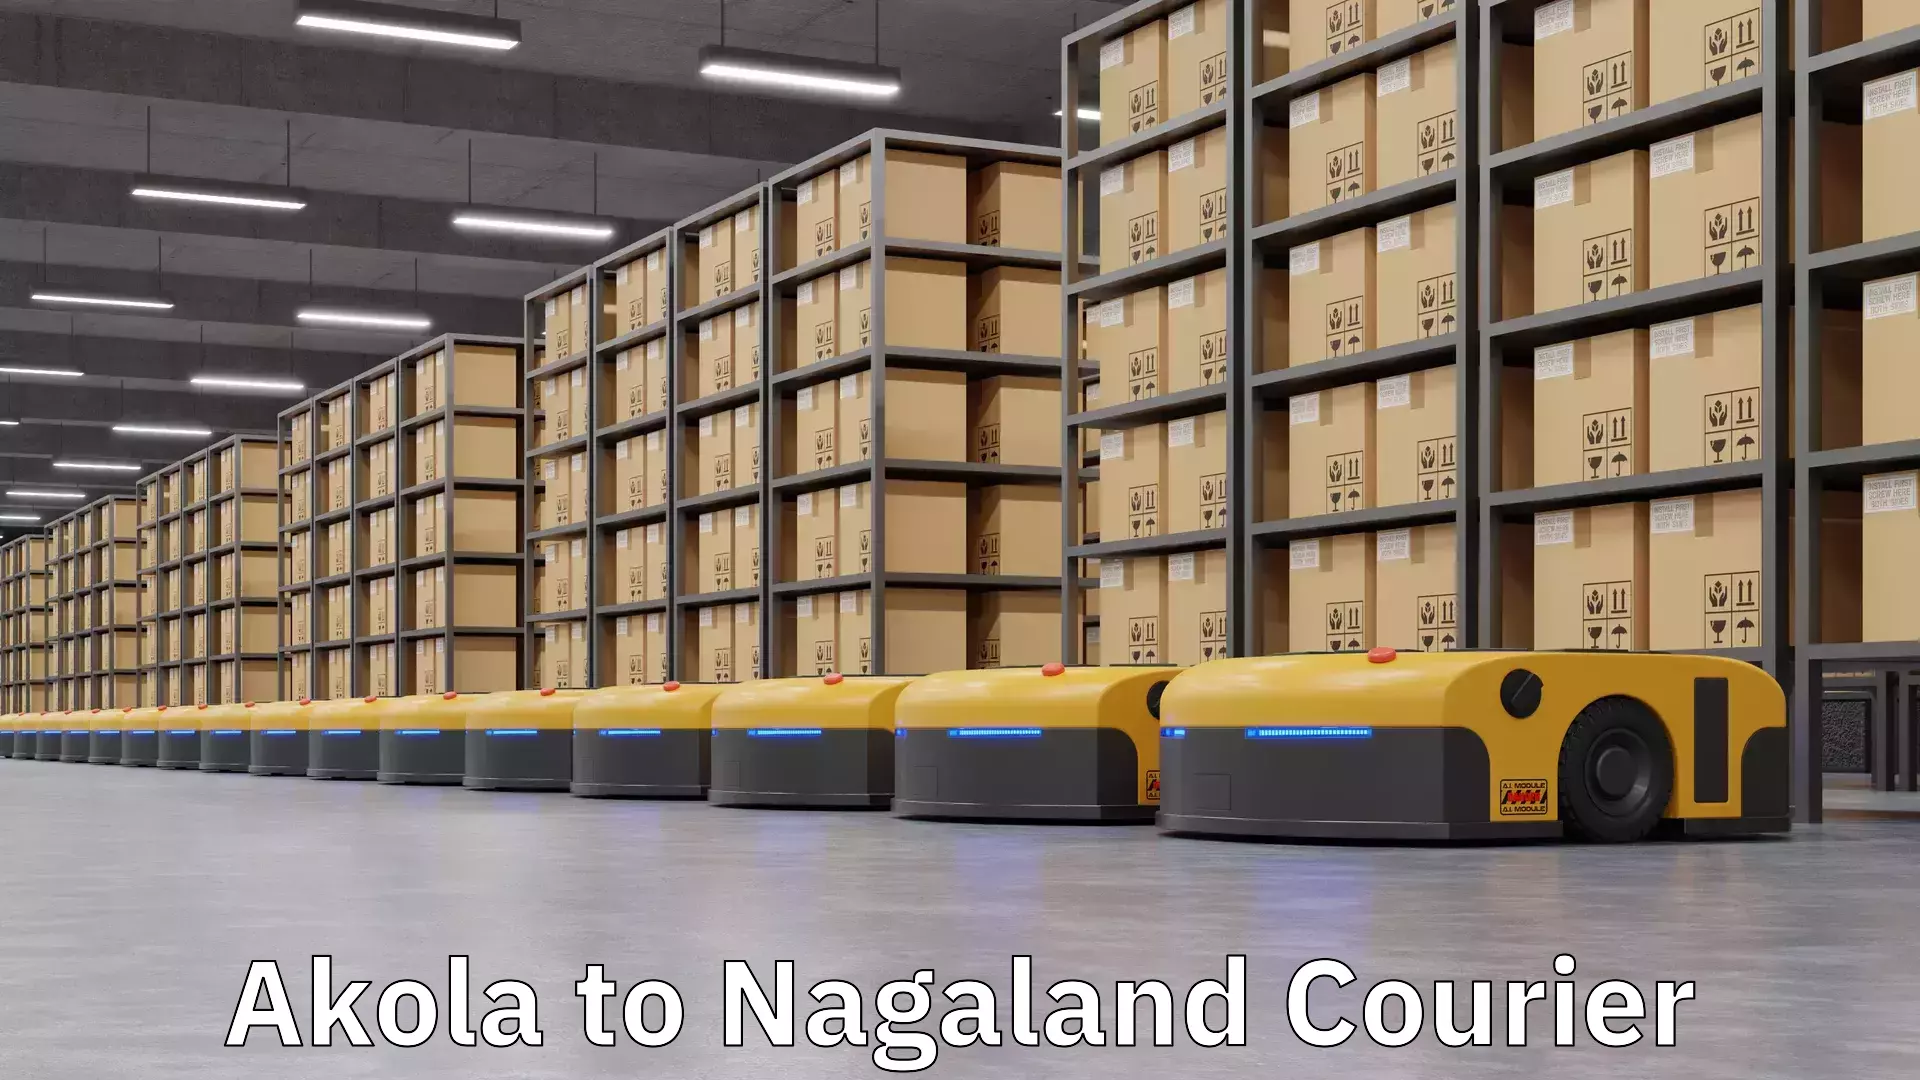 On-demand shipping options Akola to Nagaland